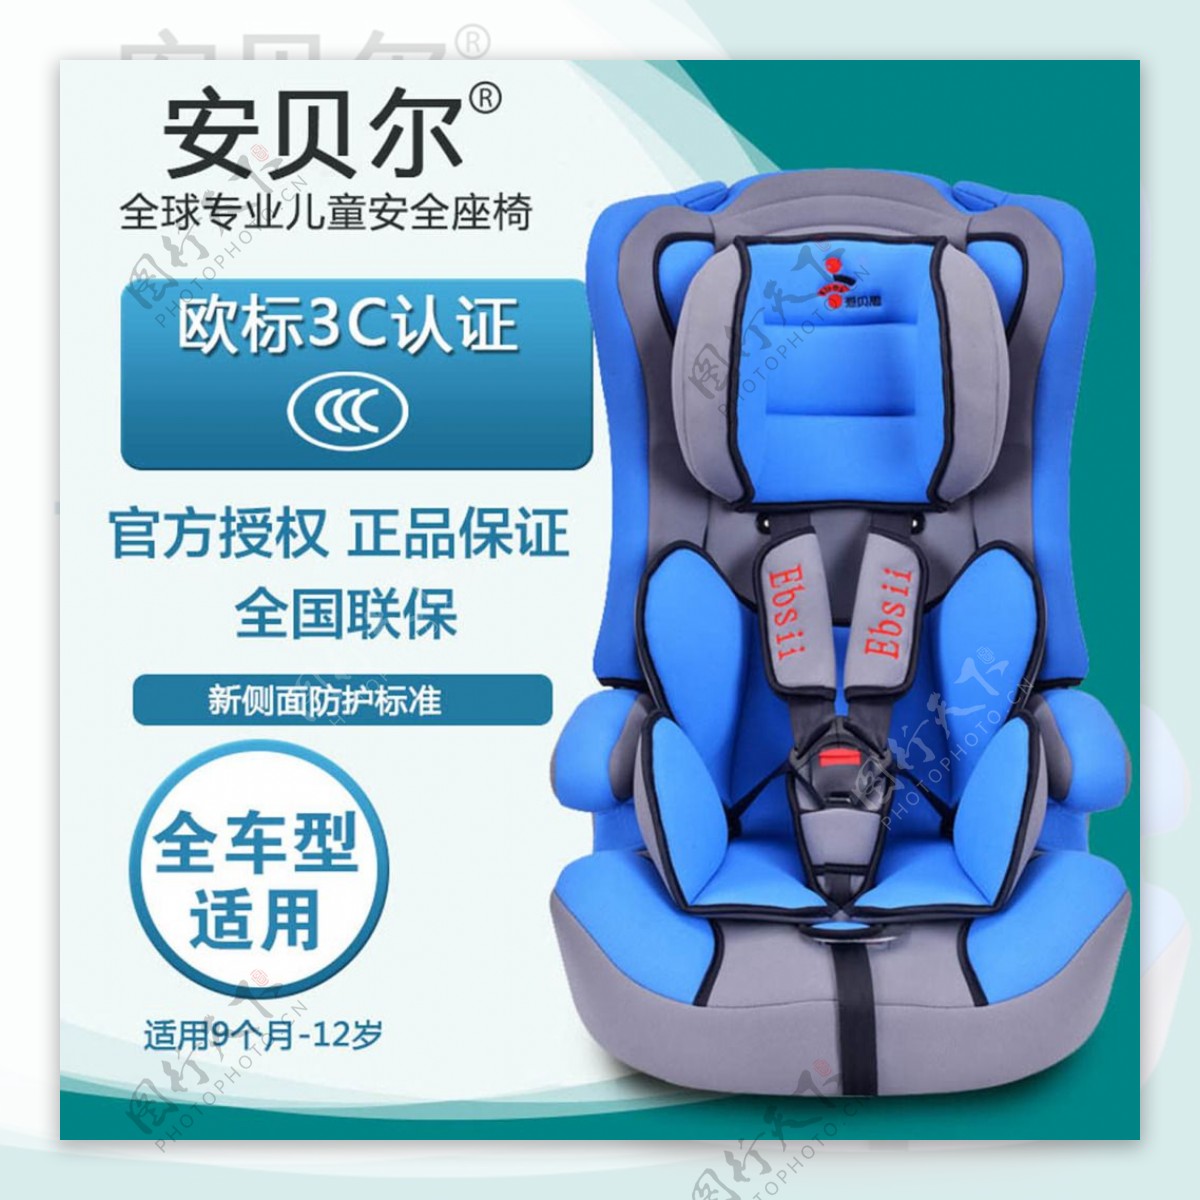 淘宝婴儿儿童汽车安全座椅直通车